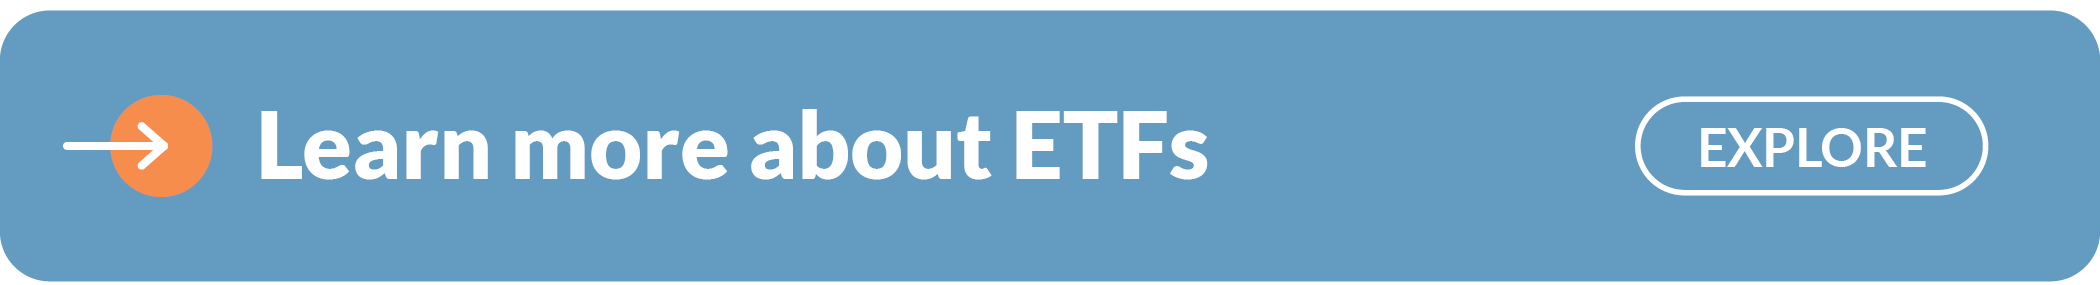 About ETFs